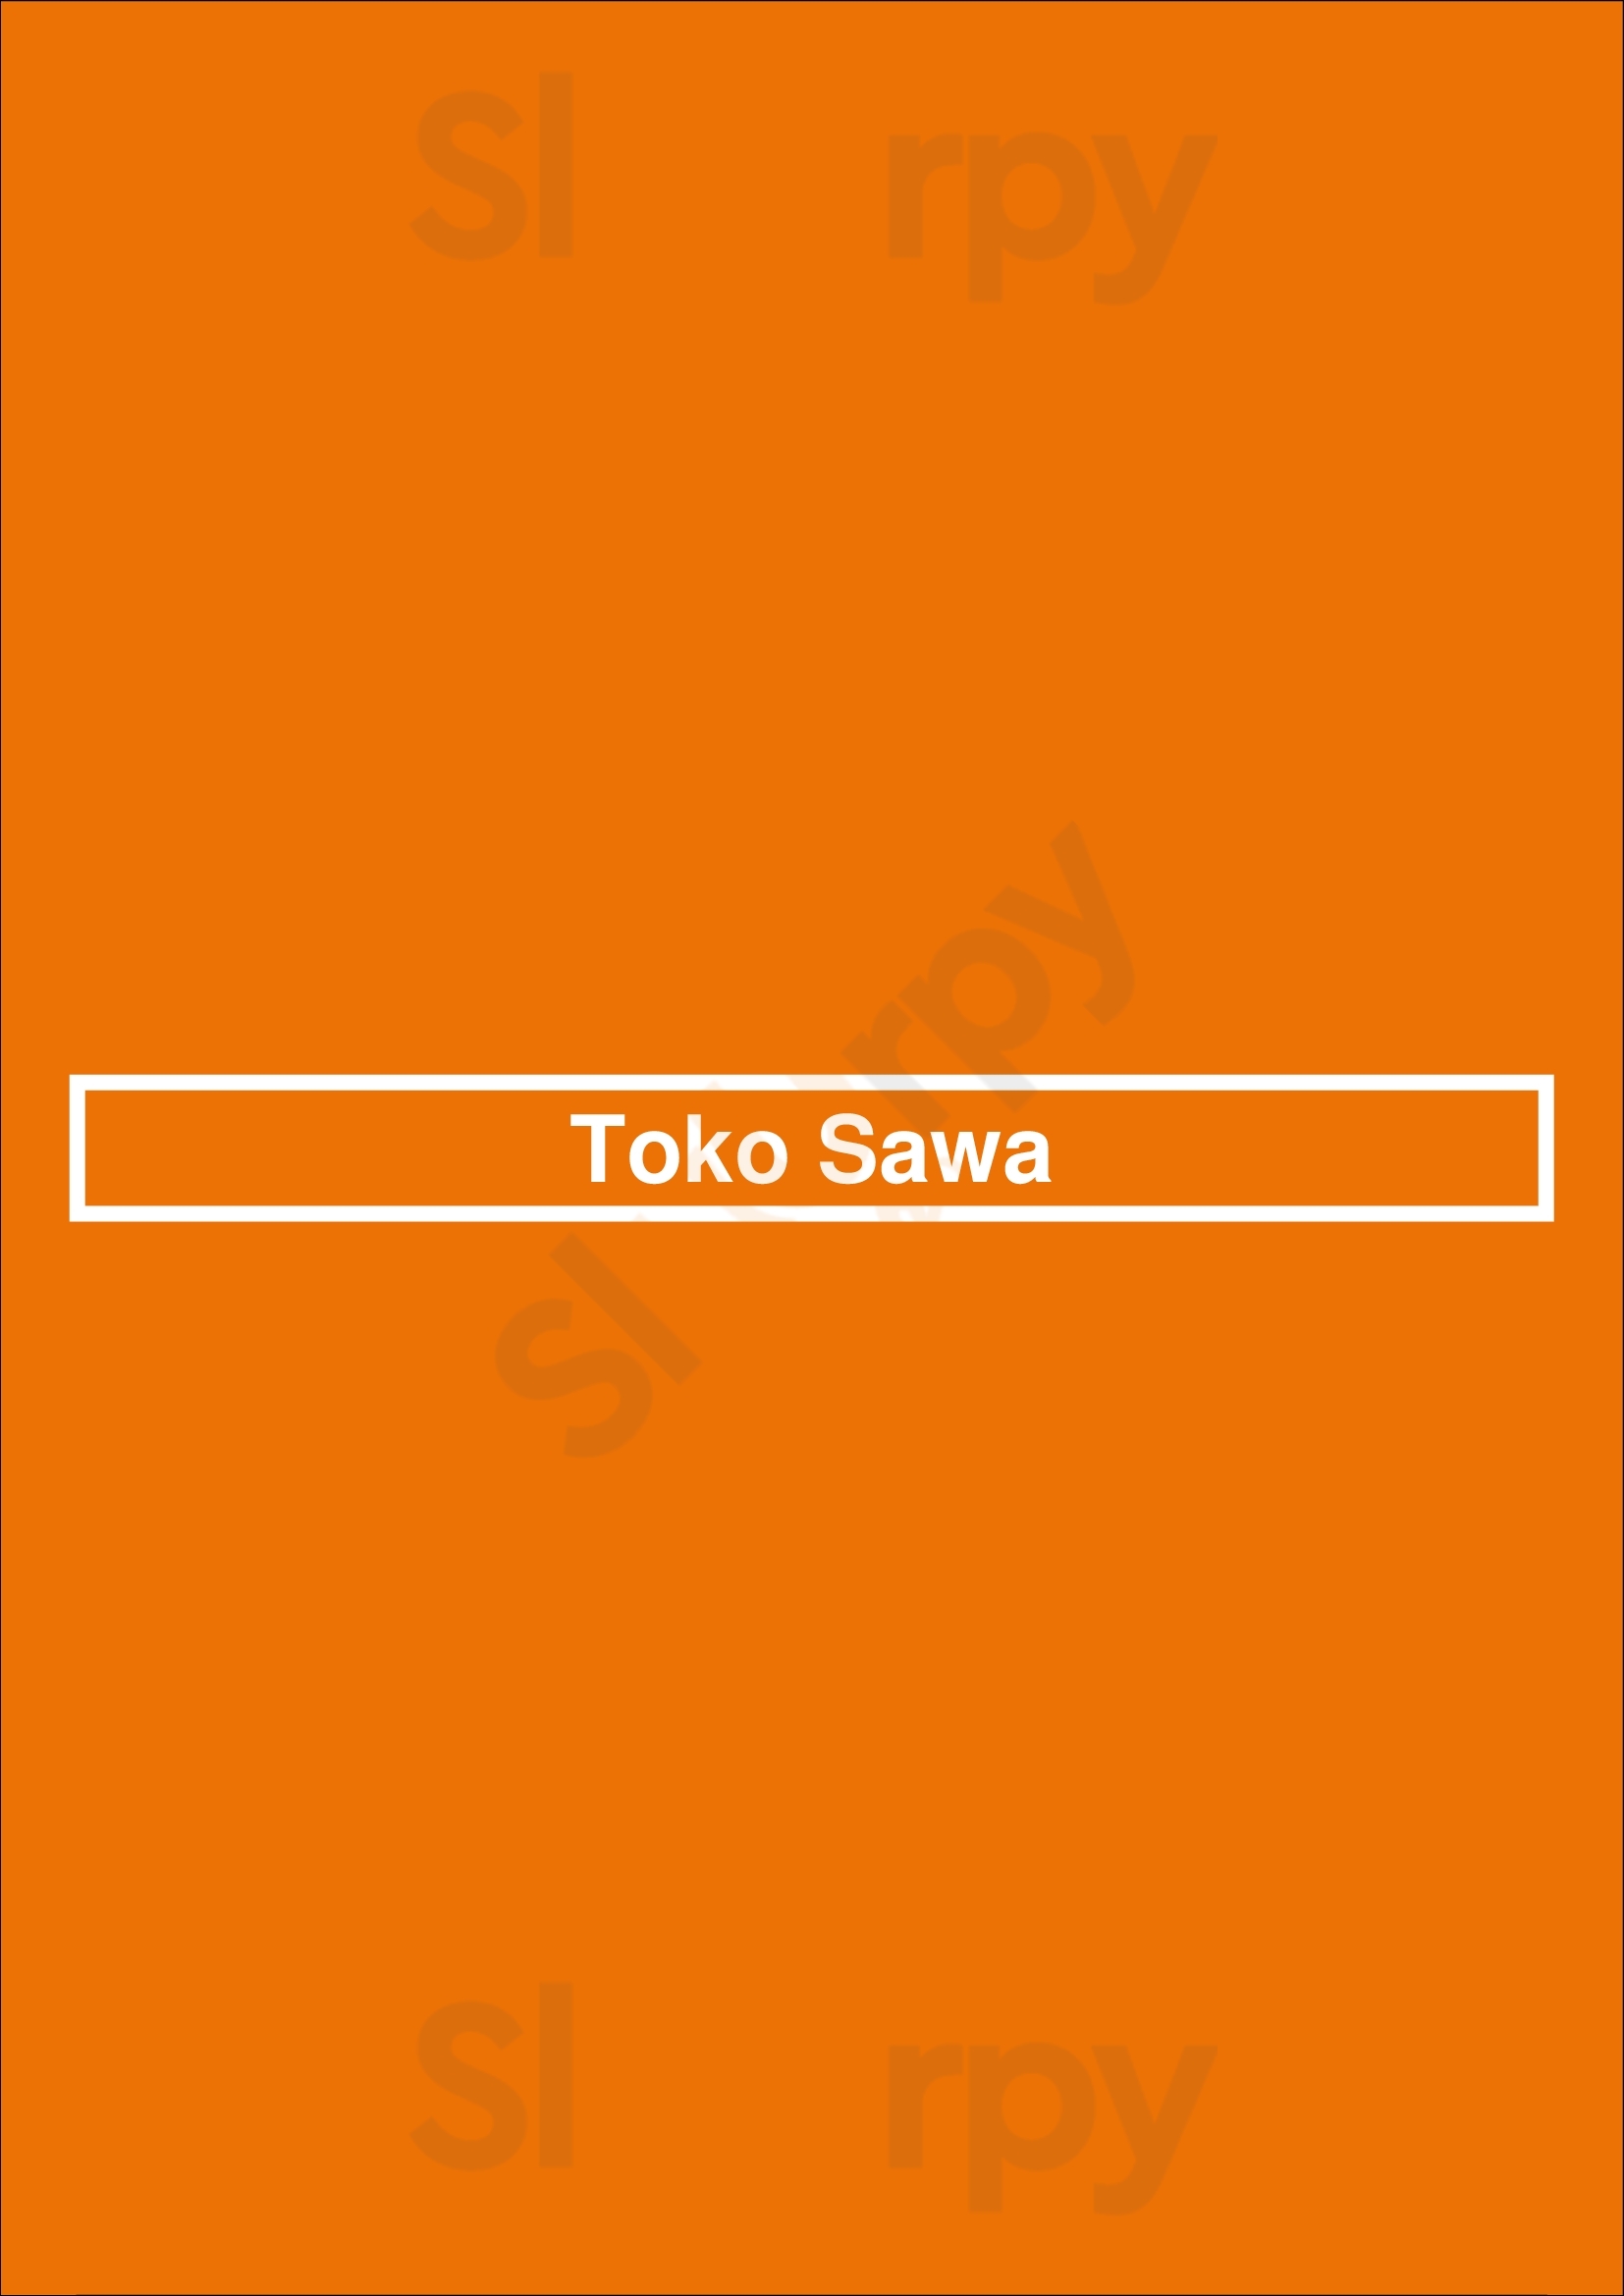 Toko Sawa Den Haag Menu - 1